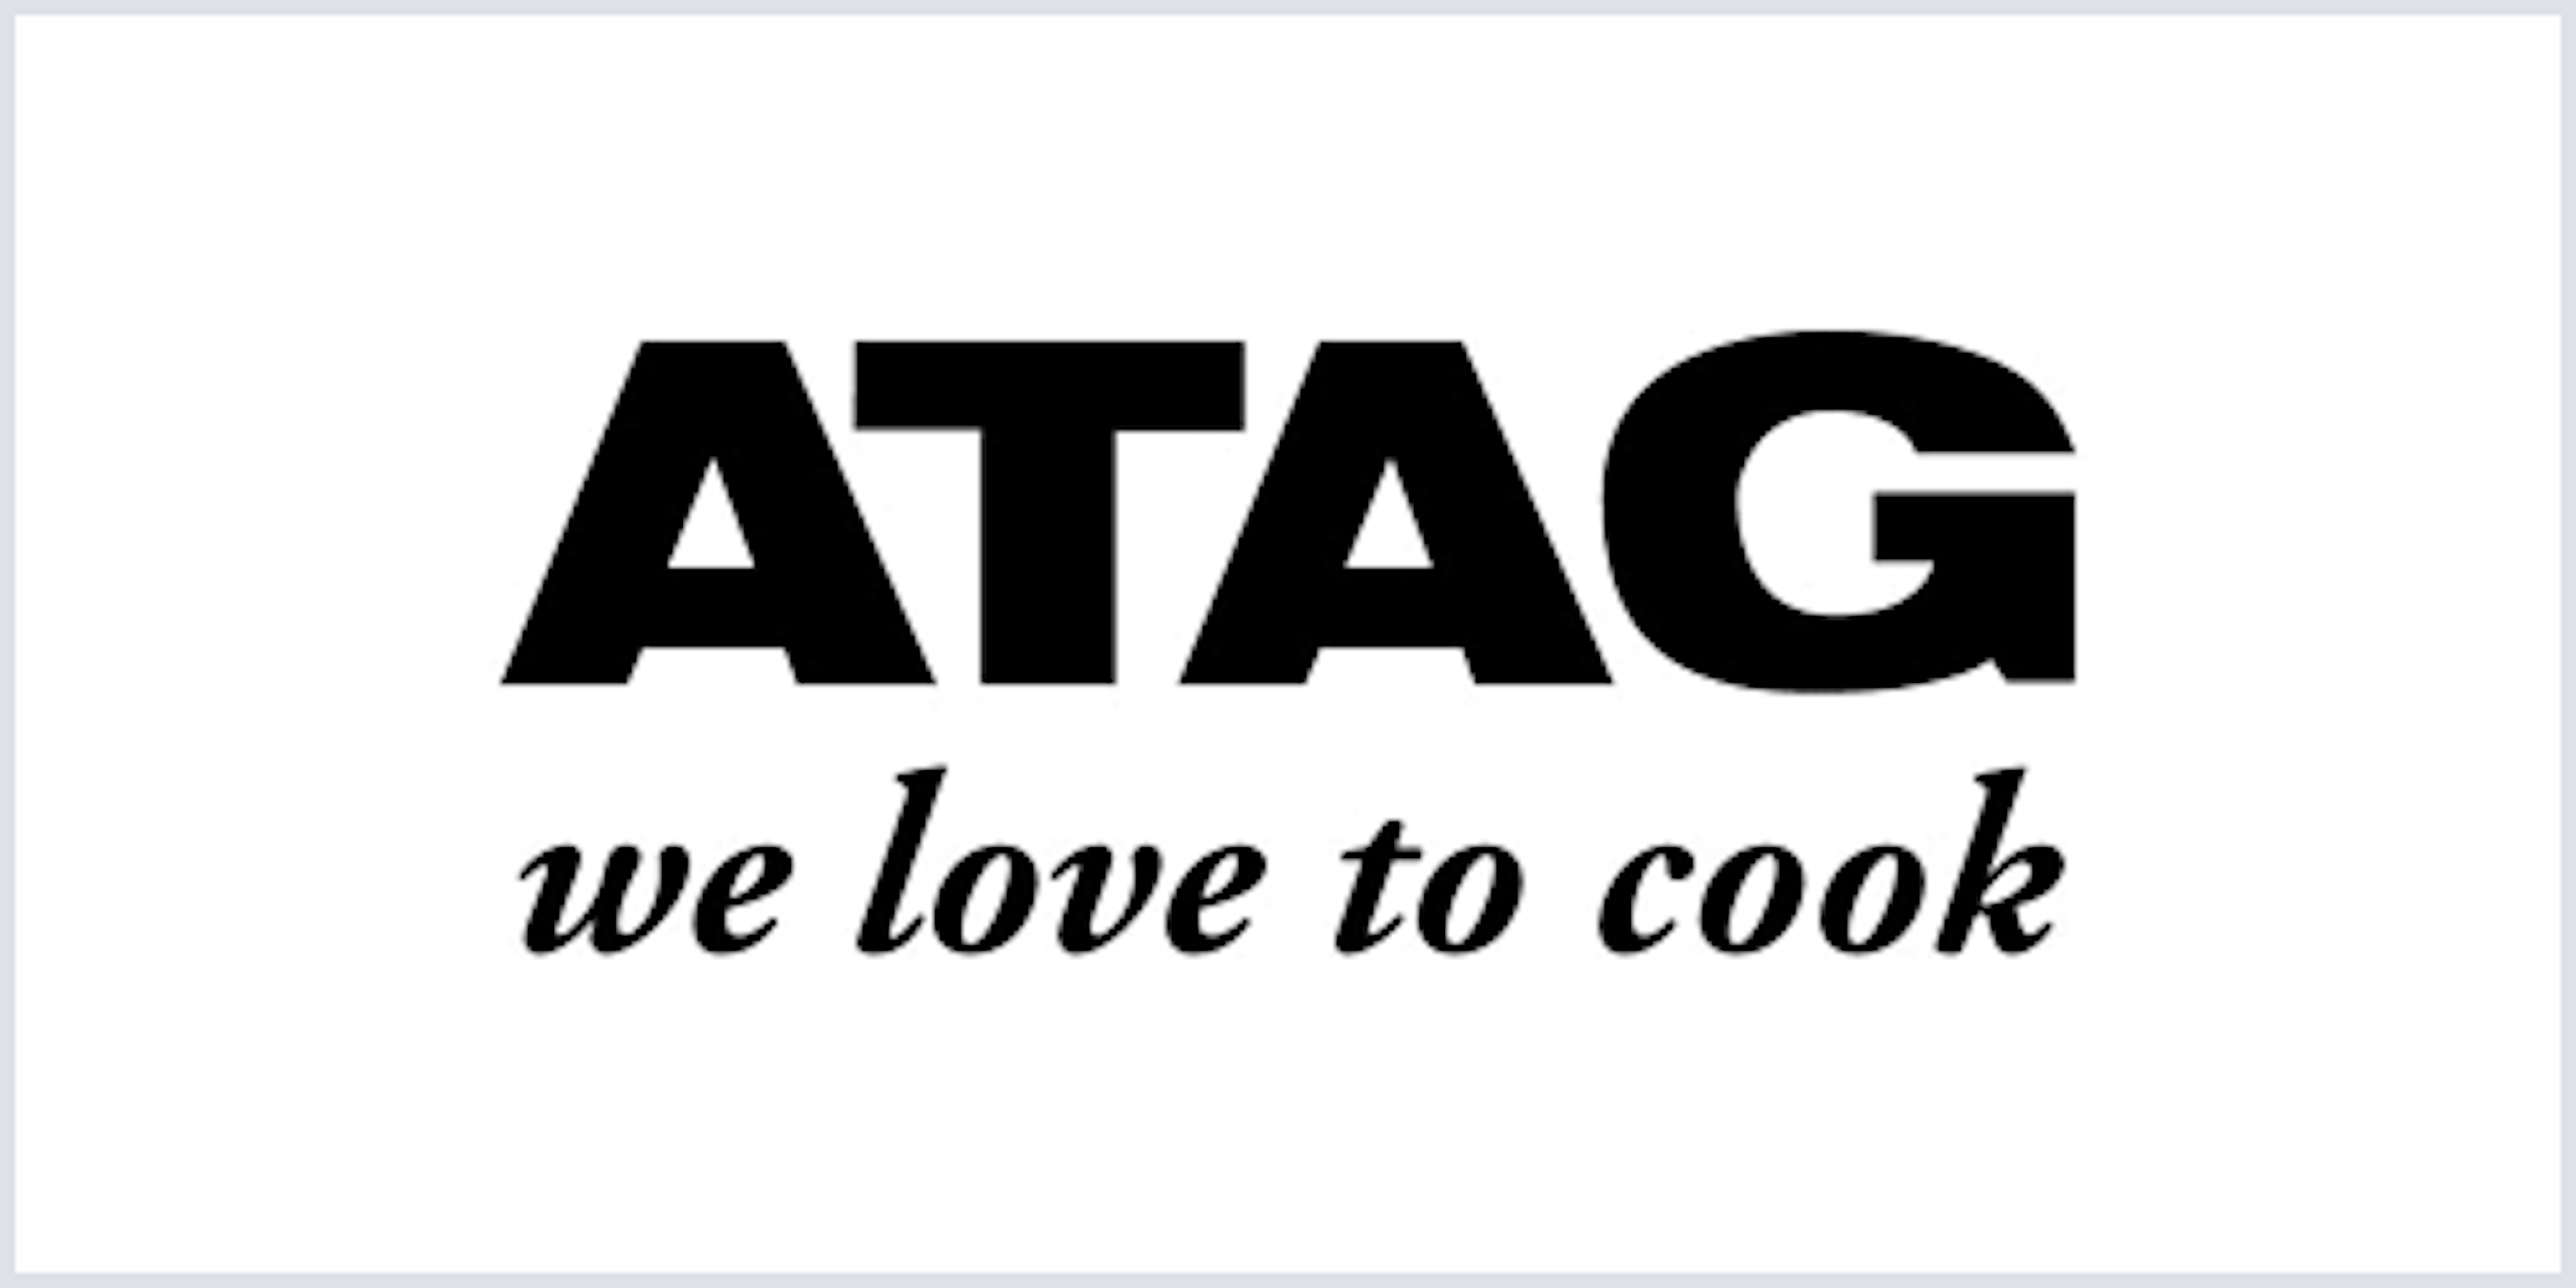 Bij ATAG draait alles om koken, in de breedste zin van het woord.